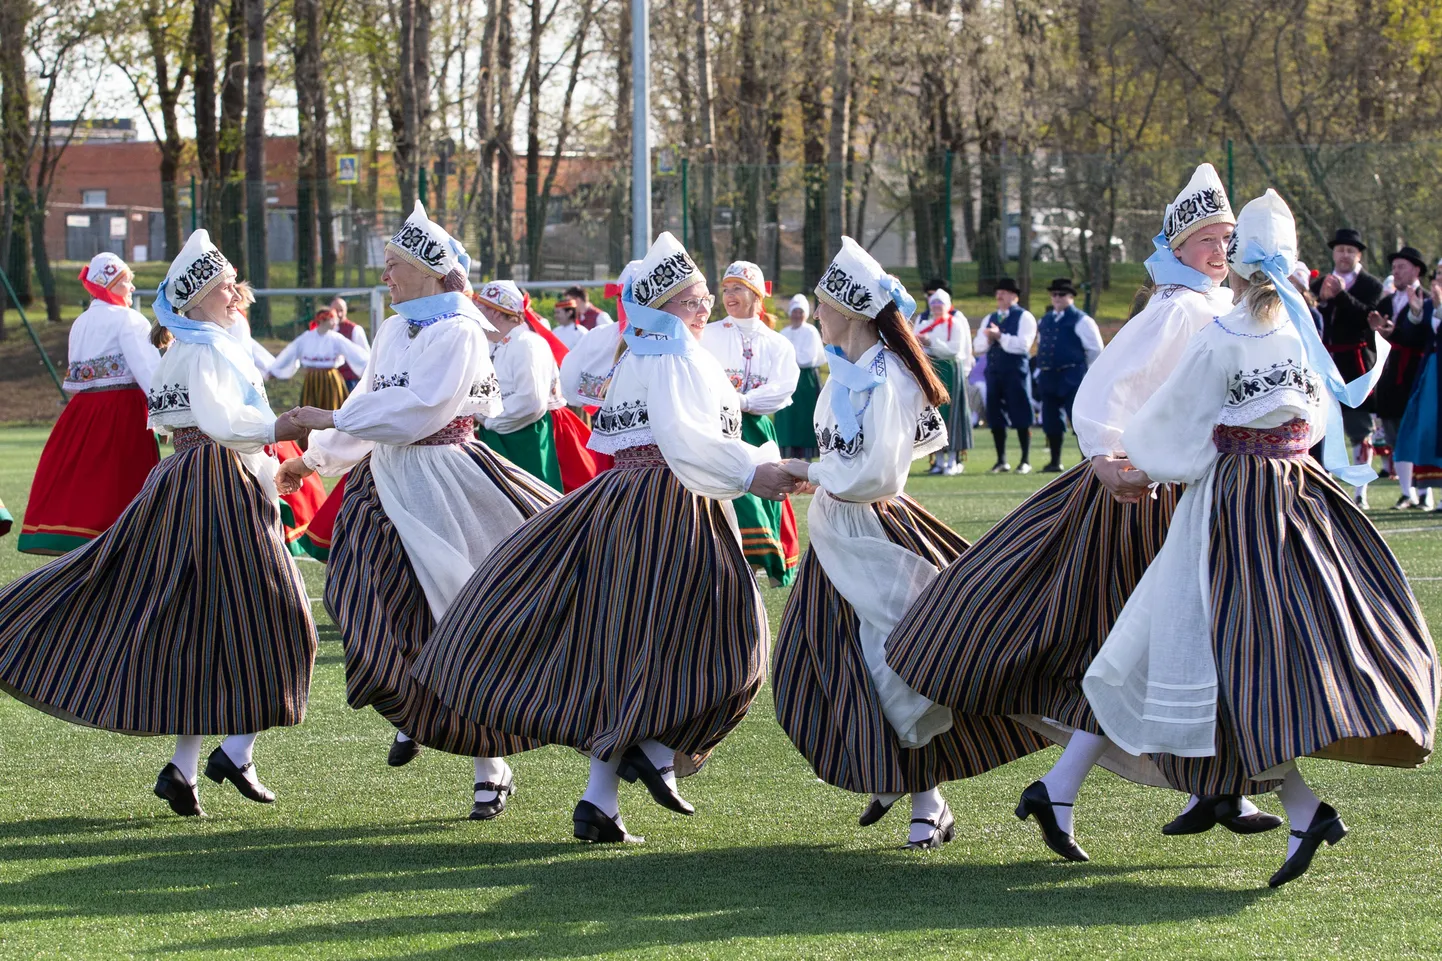 Kahe aasta eest peeti Kohtla-Järve staadionil Ida-Virumaa tantsupidu. Tänavu võõrustas kogu Virumaa tantsupidu Jõhvi Heino Lipu staadion.